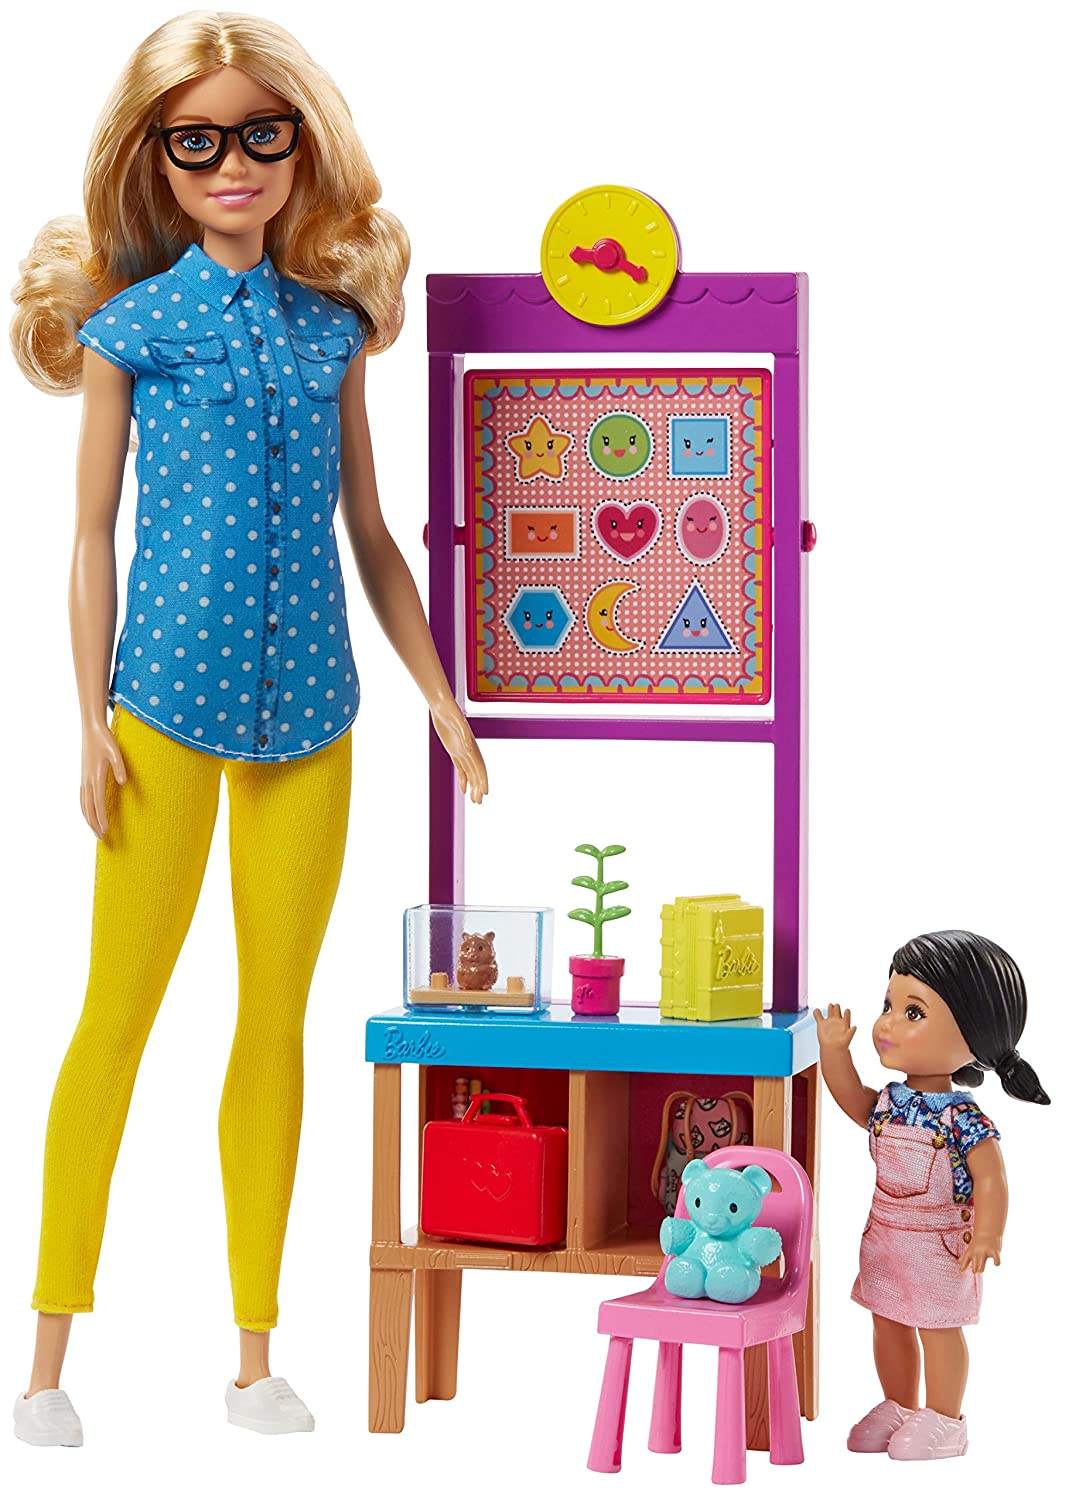 Barbie's Career Teacher Playset